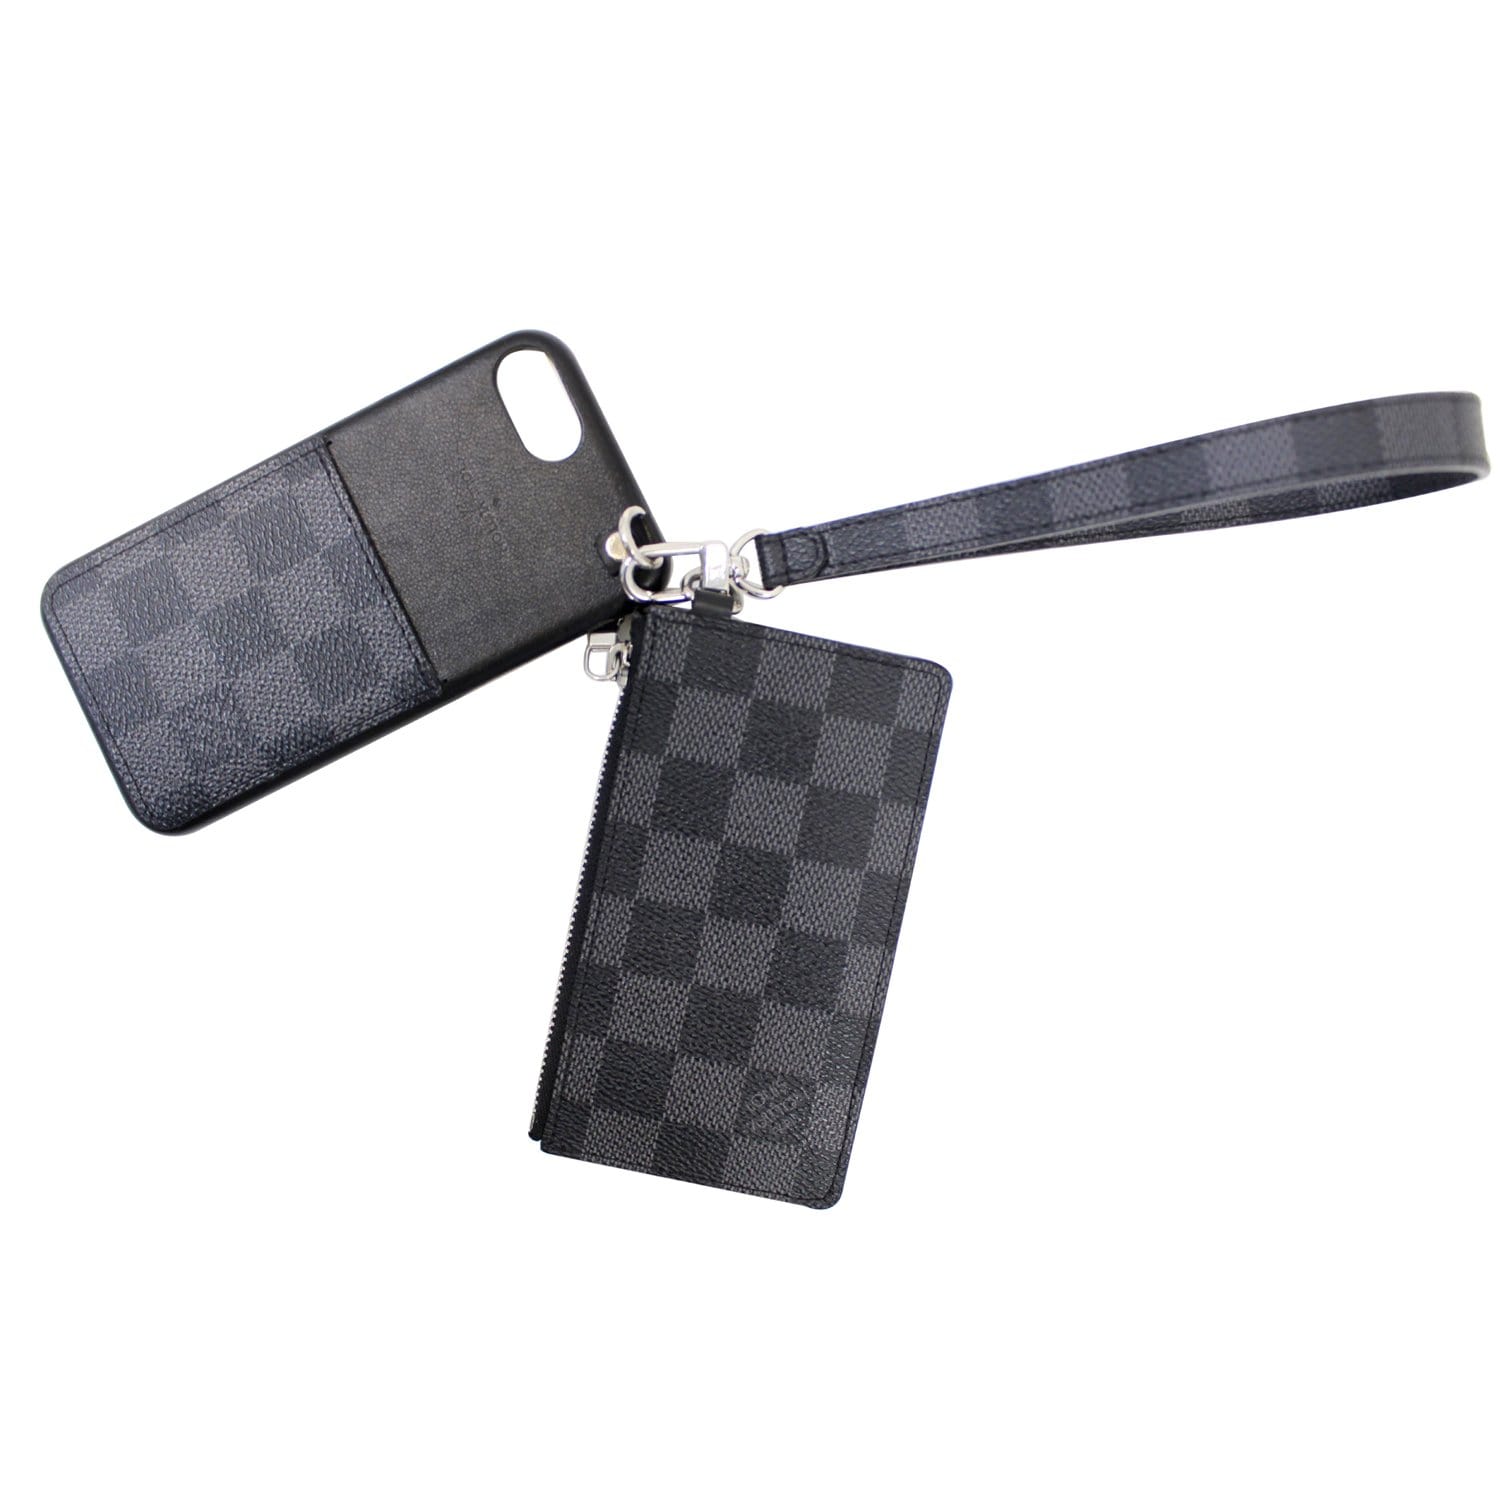 Louis Vuitton Damier Graphite iPhone 8 Case - Black Phone Cases, Technology  - LOU761148